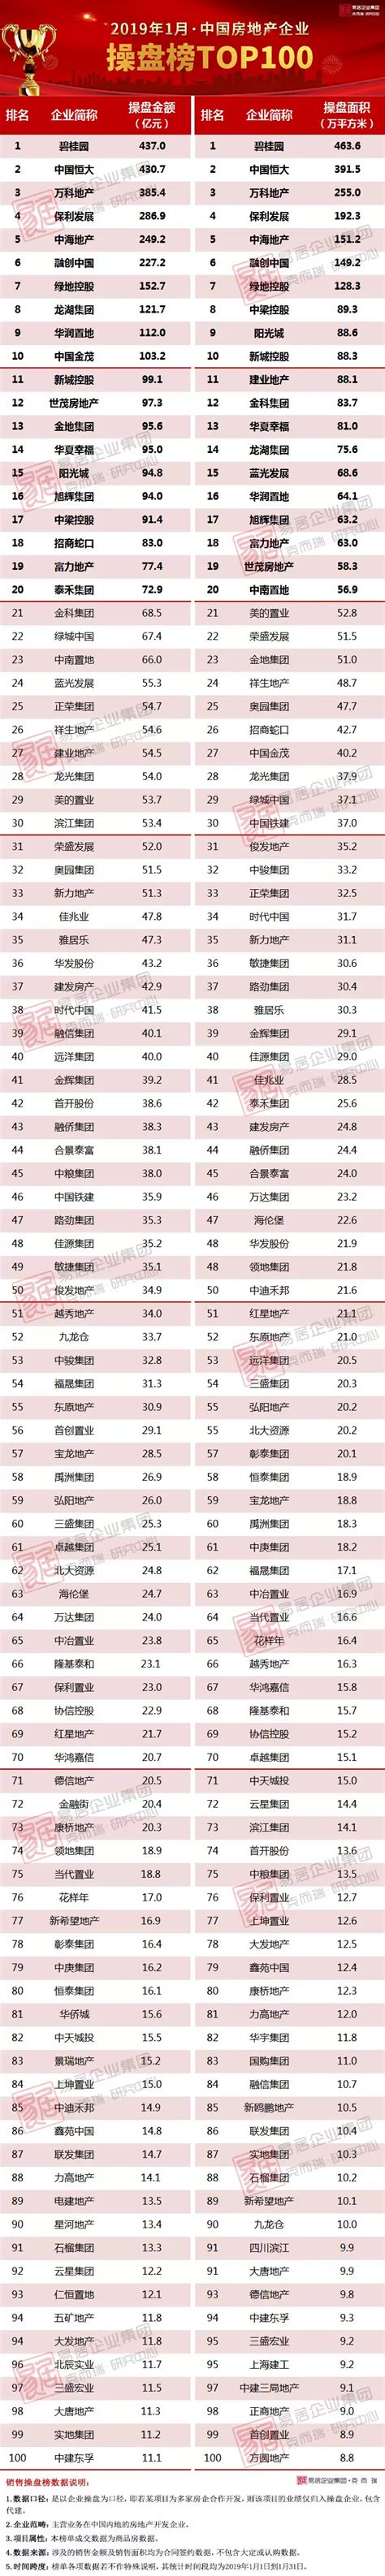 2017-2018中国家居十大品牌排行榜单【北京发布会】